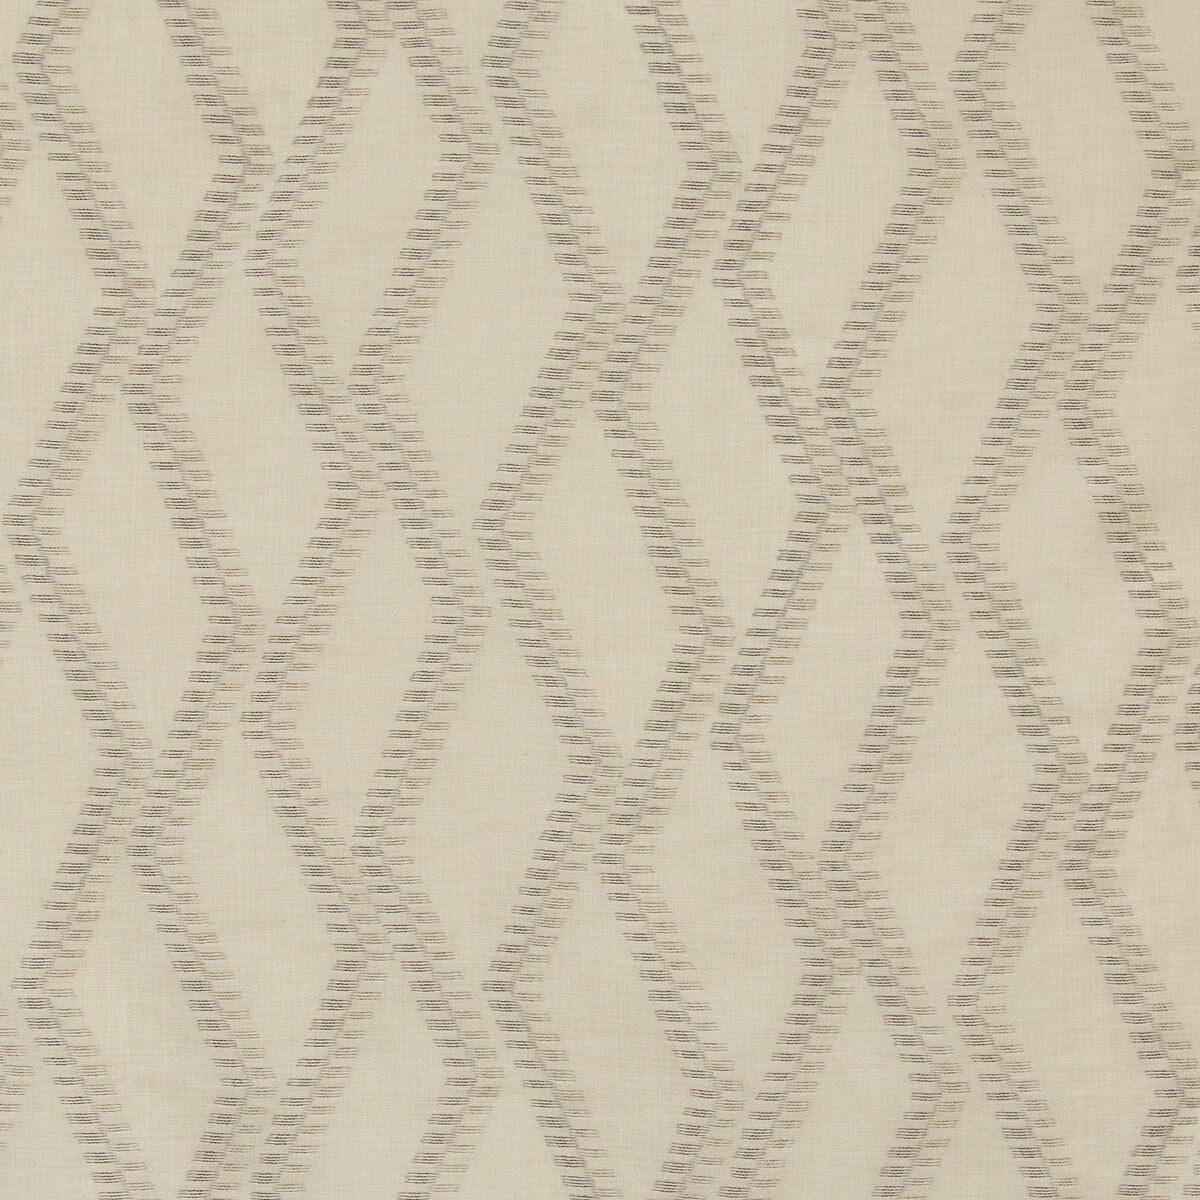 Kravet Basics fabric in 4695-11 color - pattern 4695.11.0 - by Kravet Basics